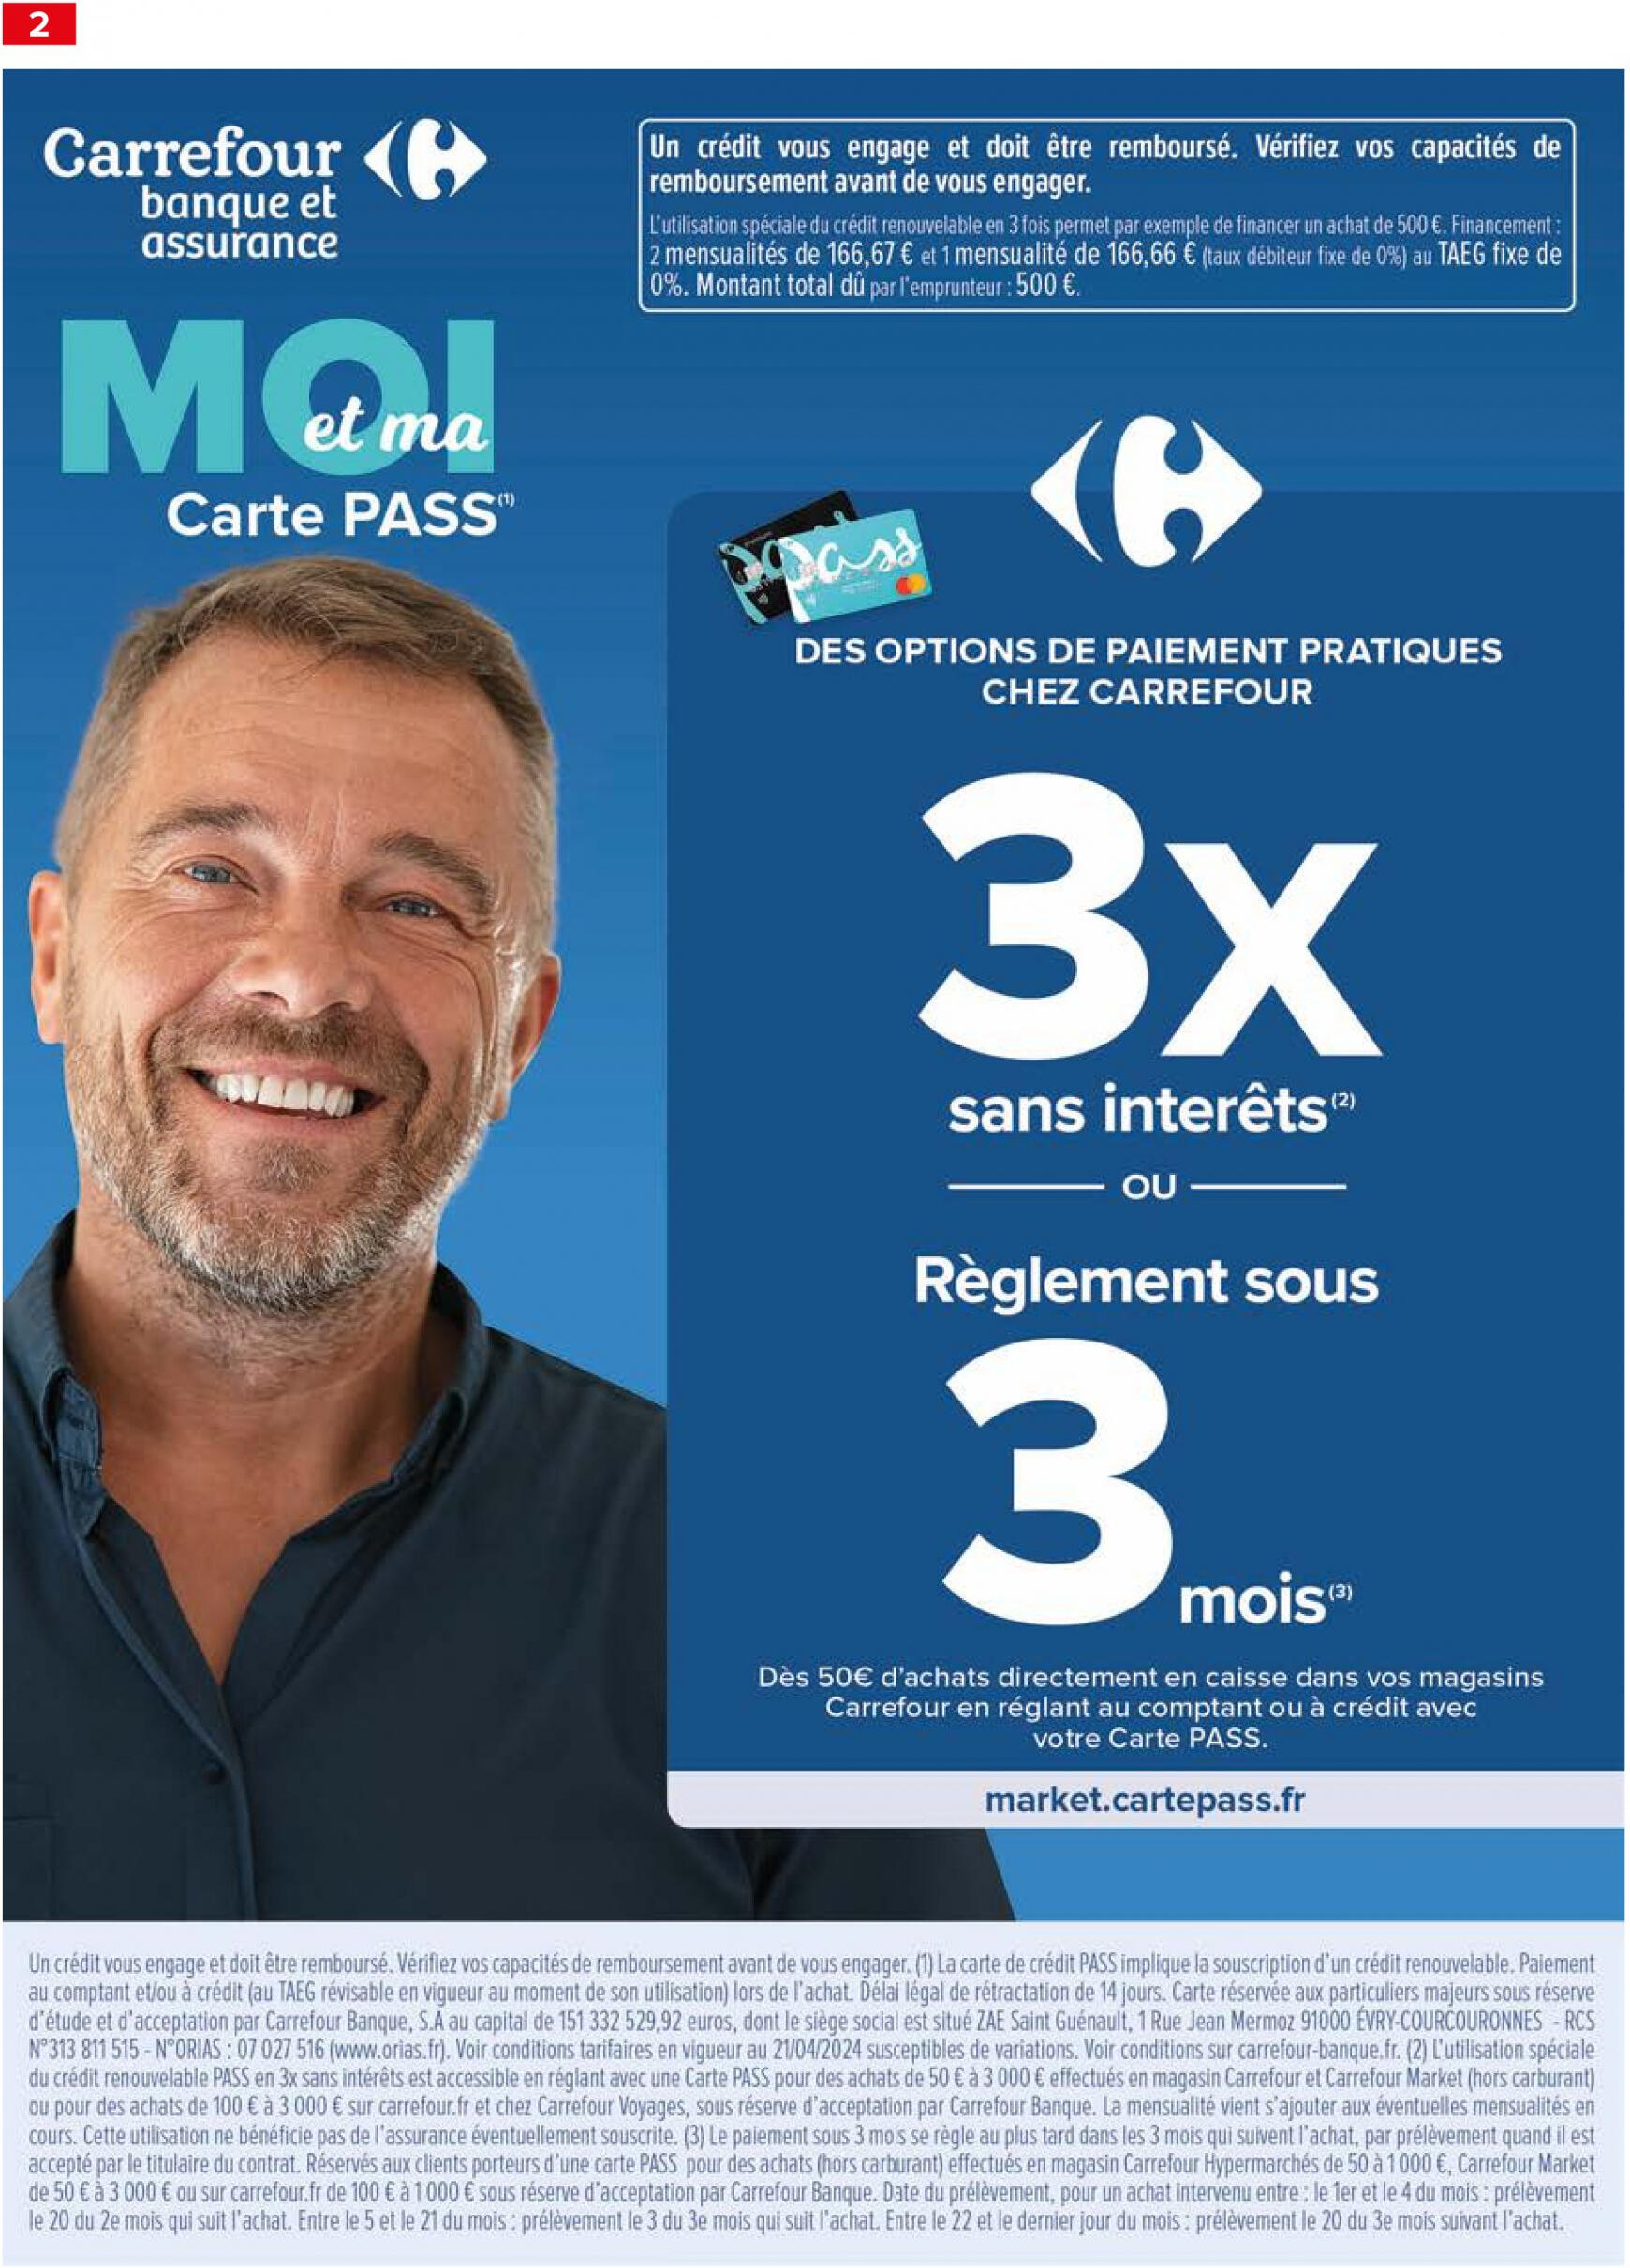 carrefour-market - Prospectus Carrefour Market - Partageons L'Esprit D'Équipe actuel 04.06. - 23.06. - page: 4